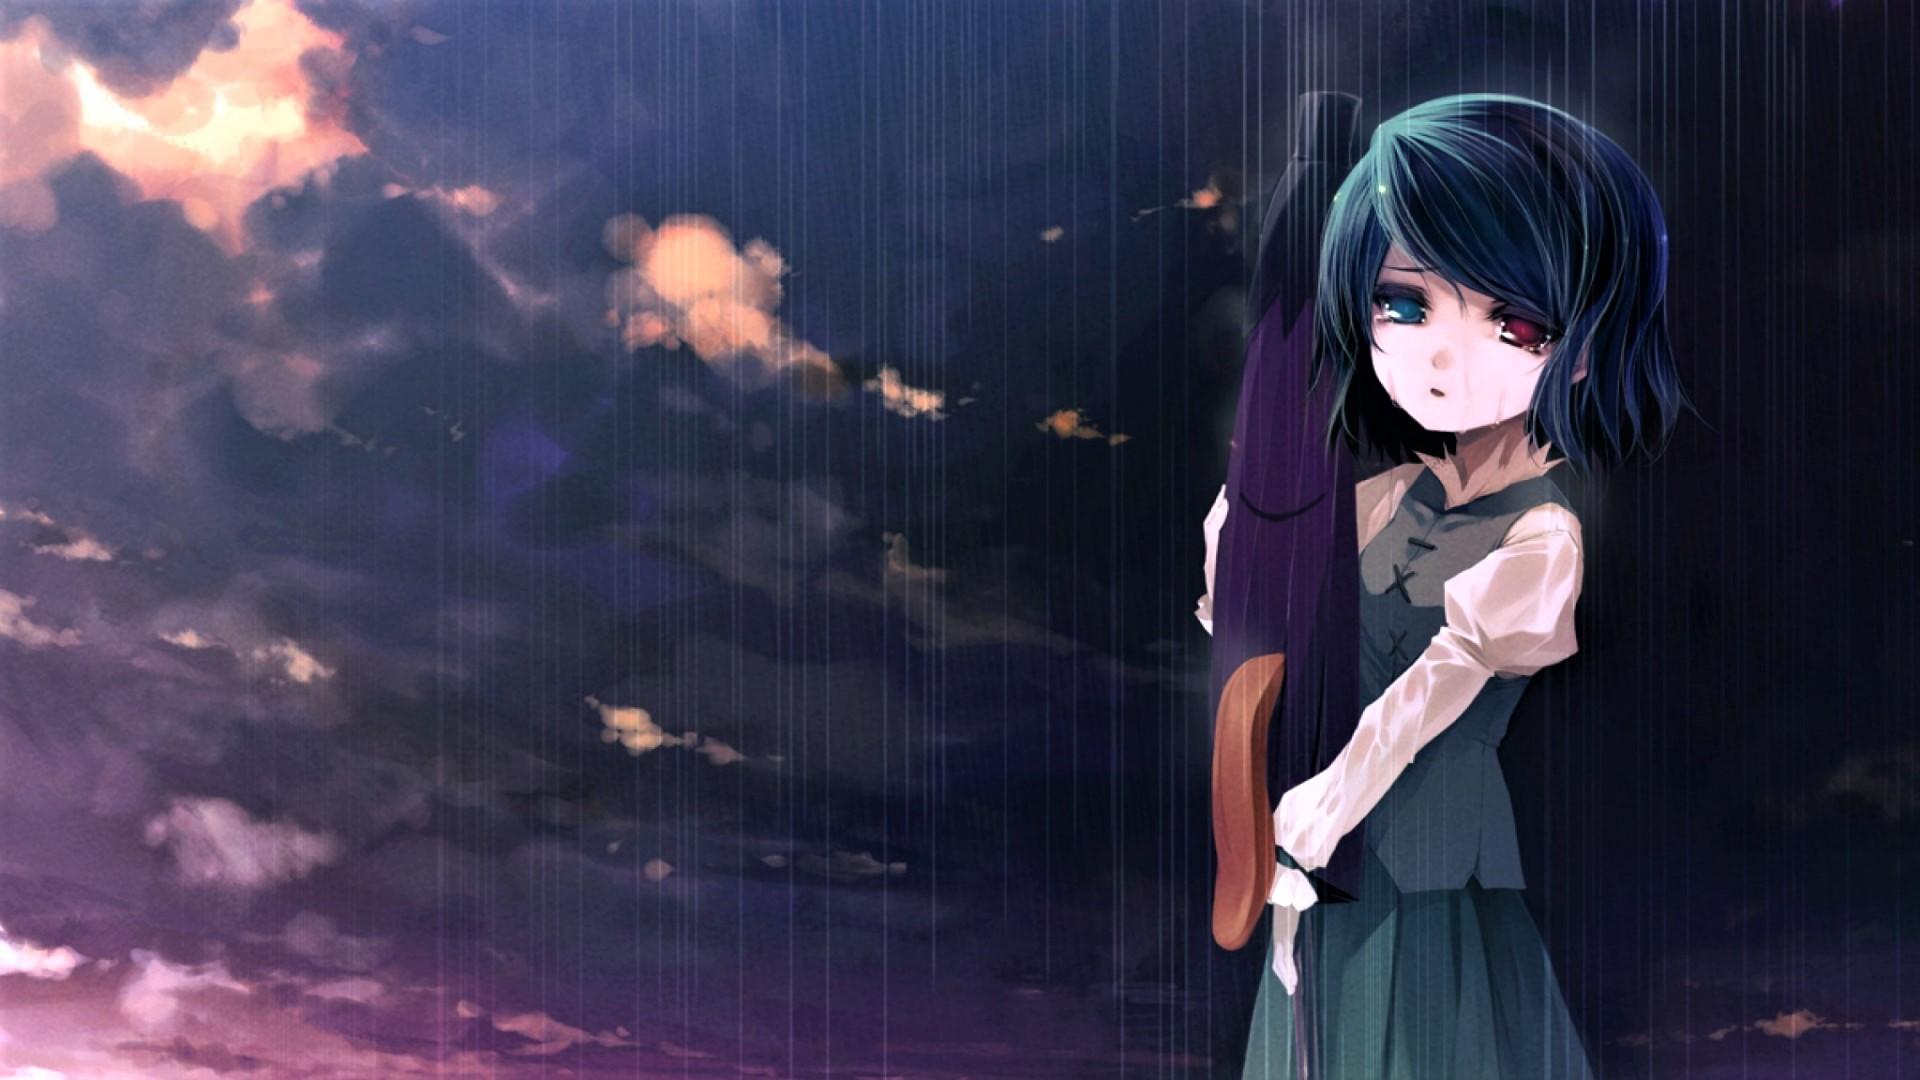 10+ Sad Anime Wallpapers Boy And Girl